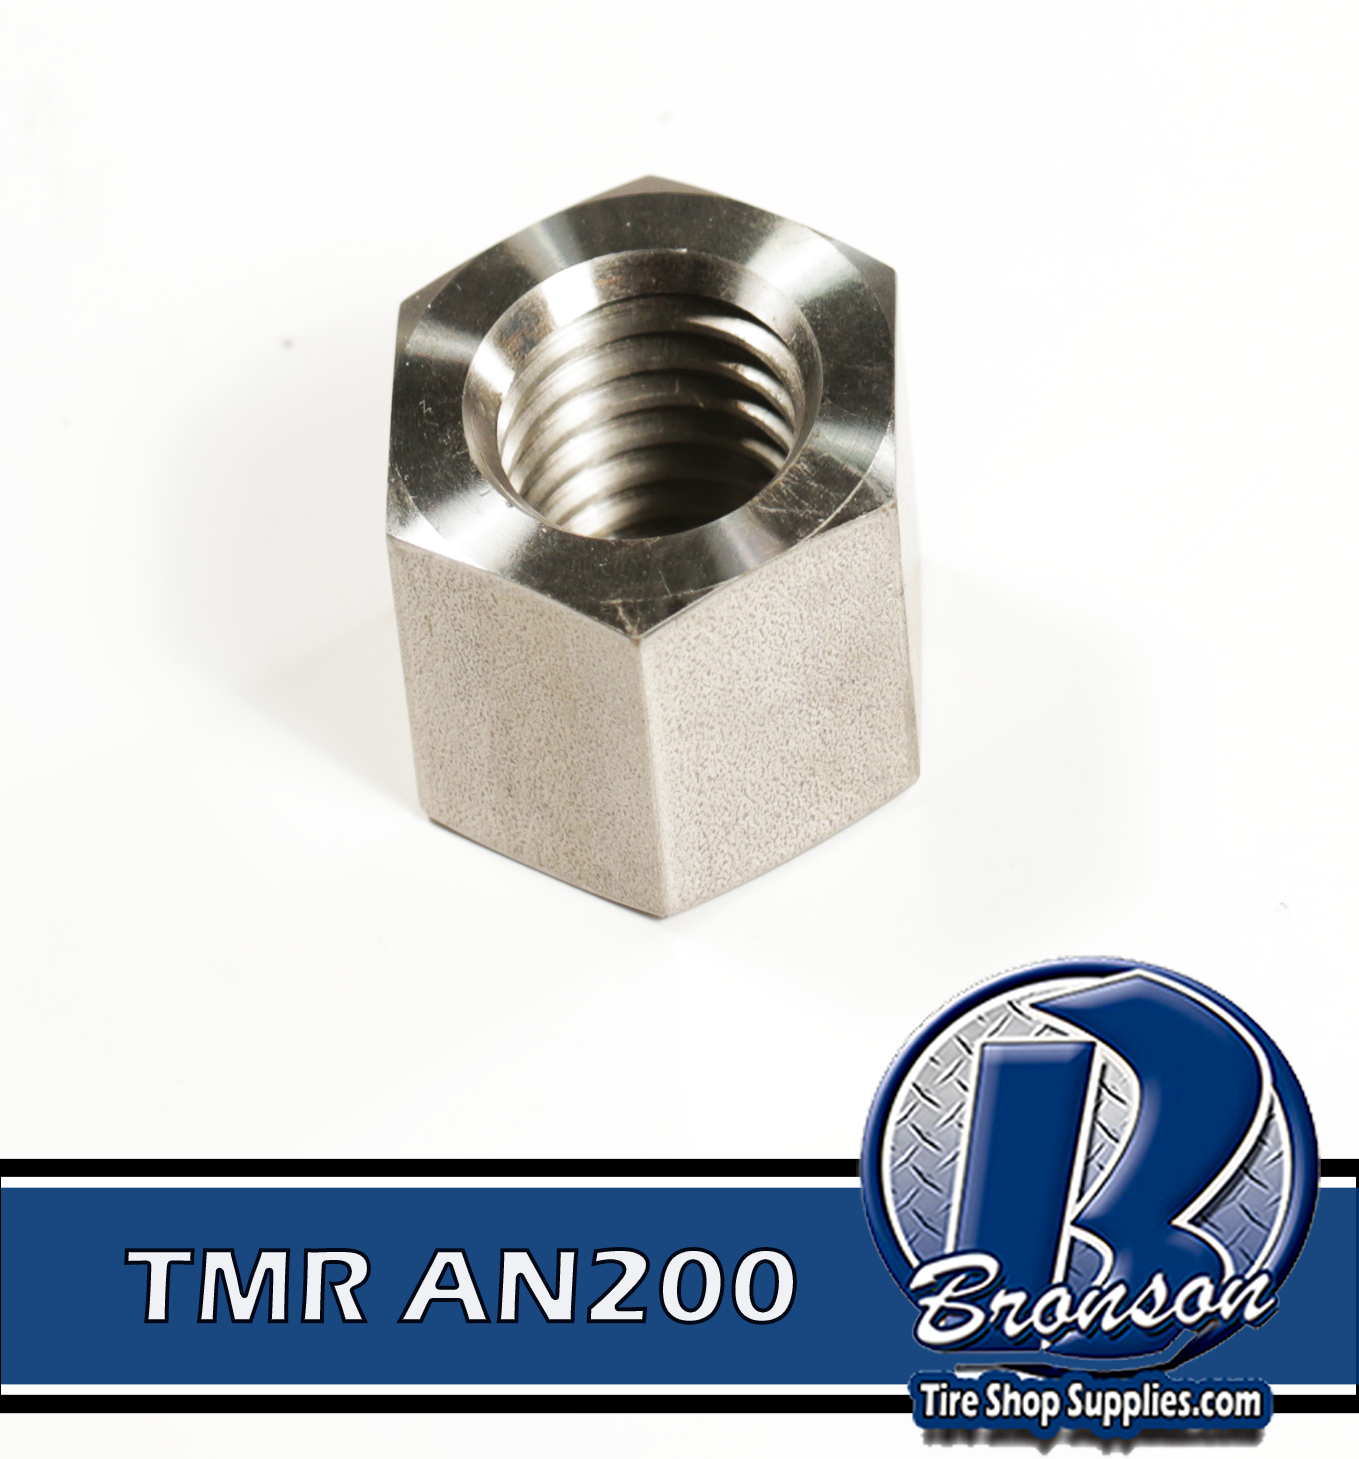 TMR AN200 Standard 1